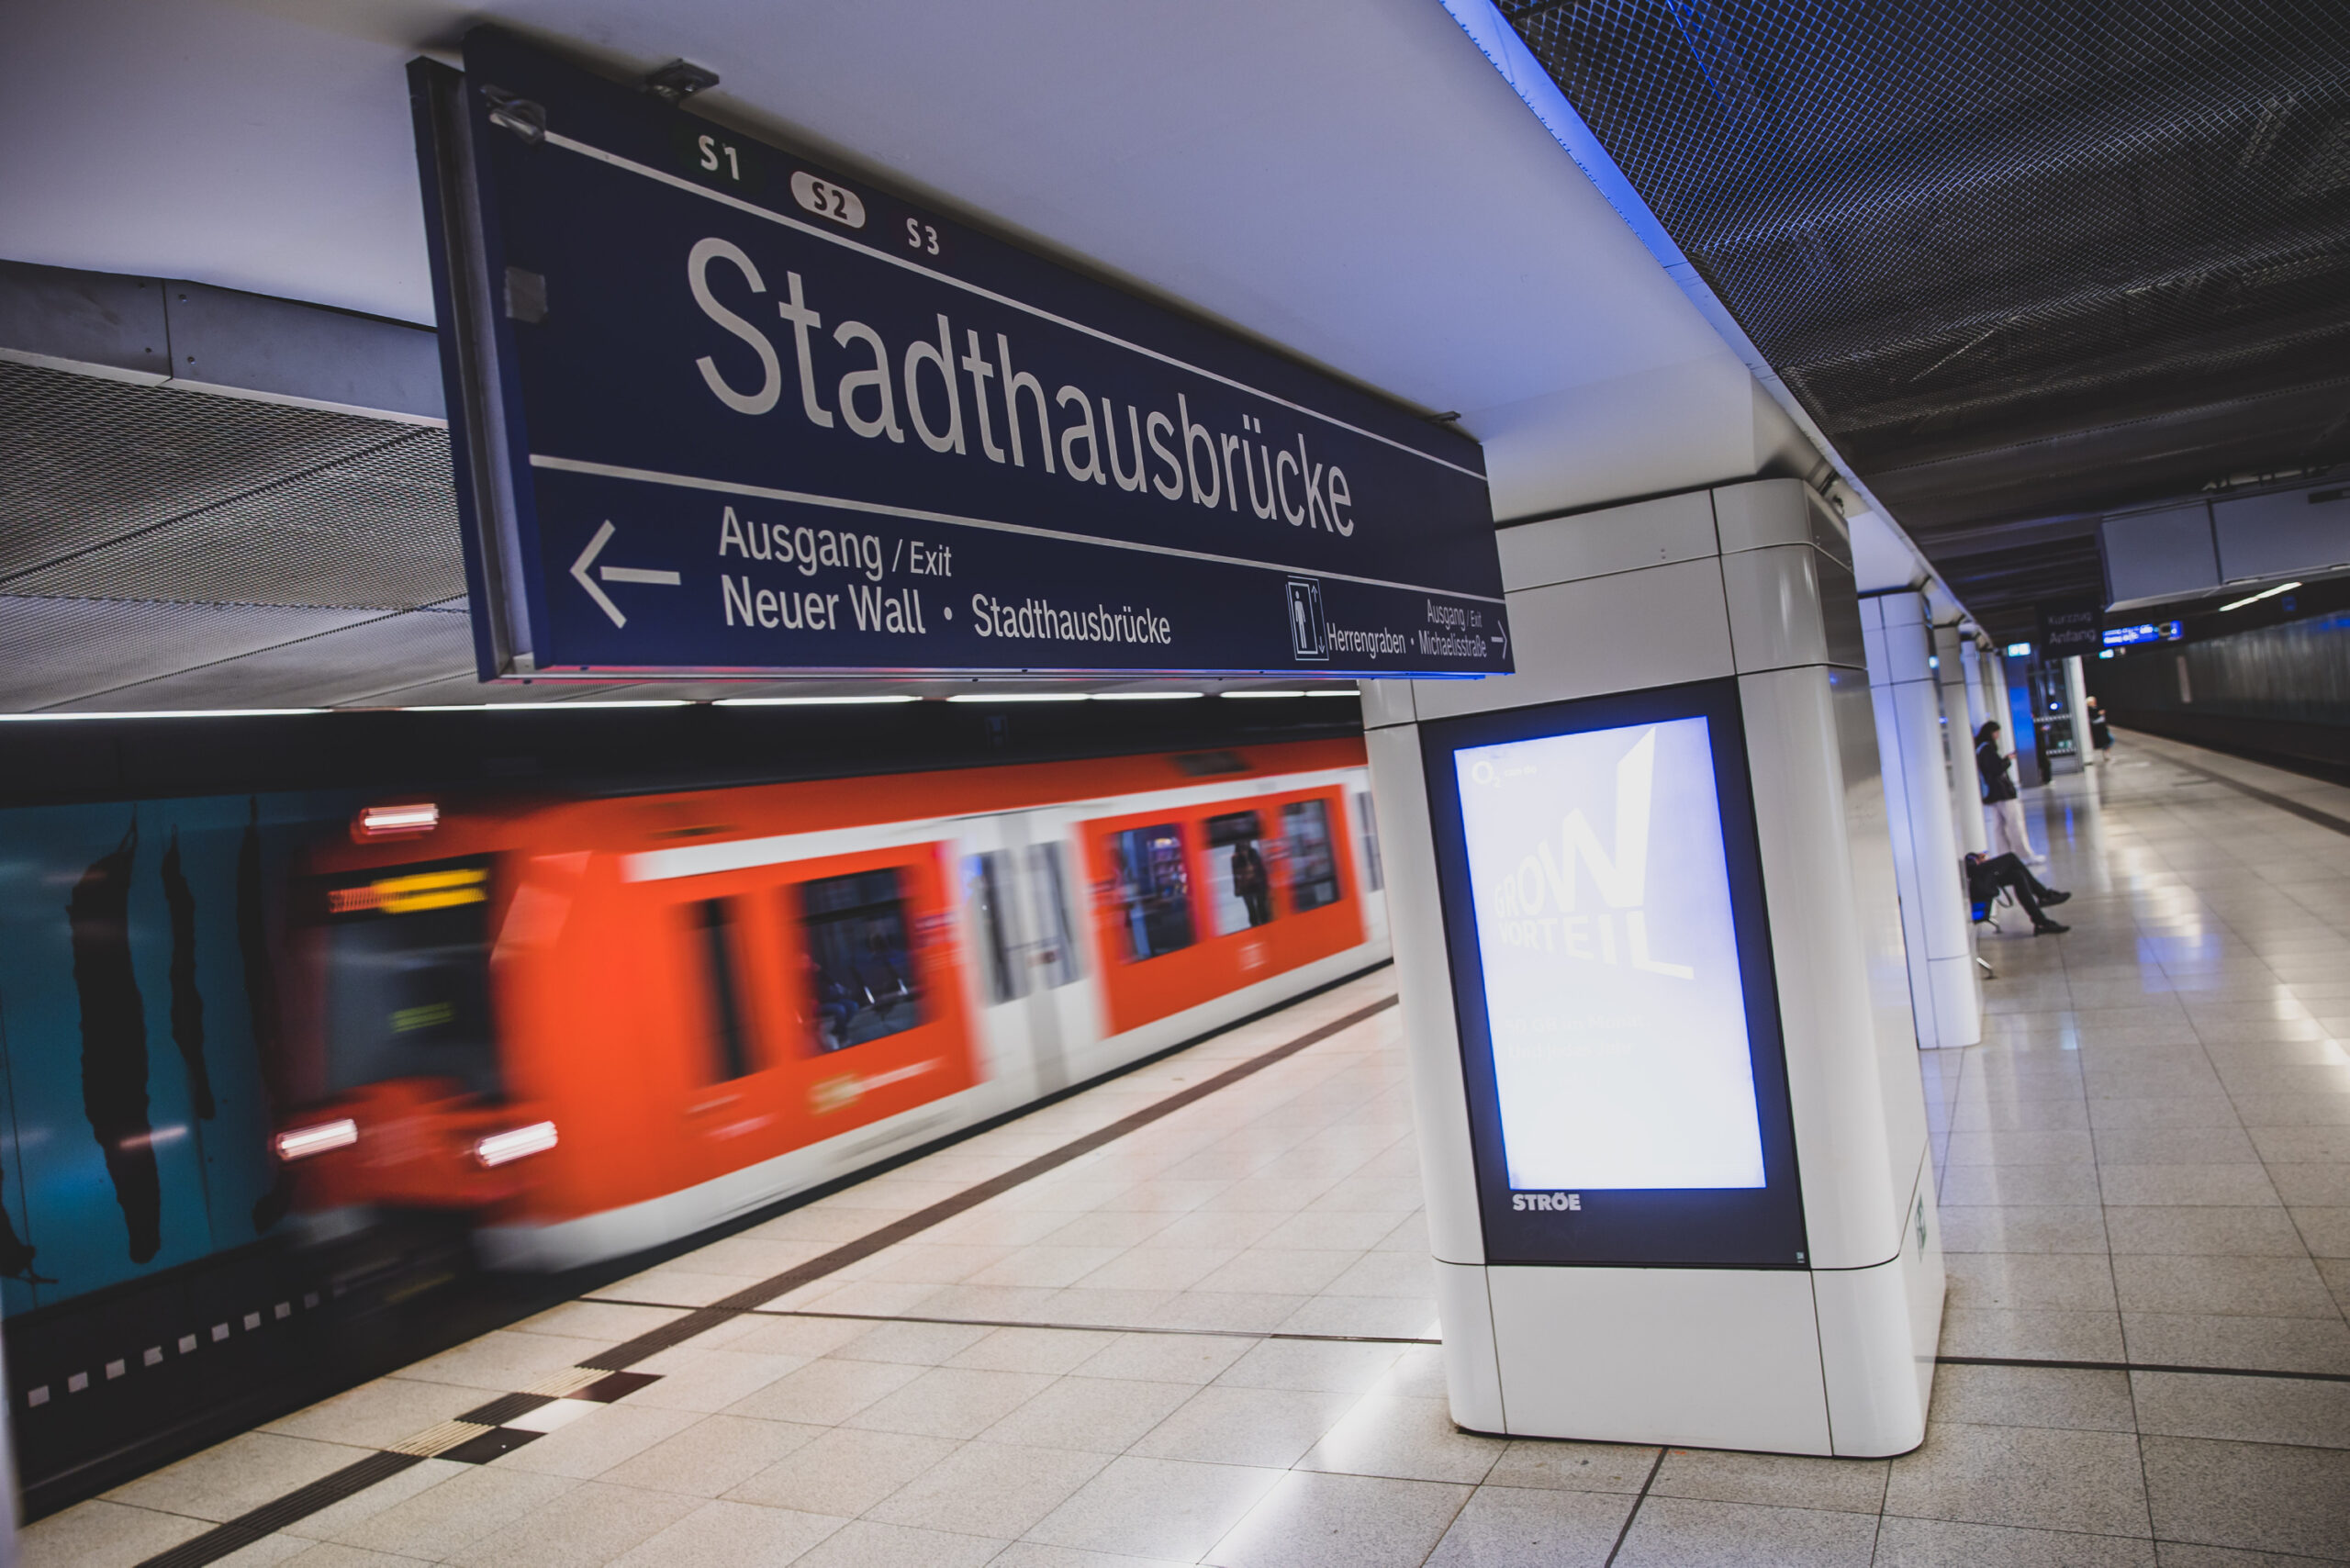 Die S-Bahn-Station Stadthausbrücke – mitten in der Rushhour kommt es dort zu dramatischen Szenen